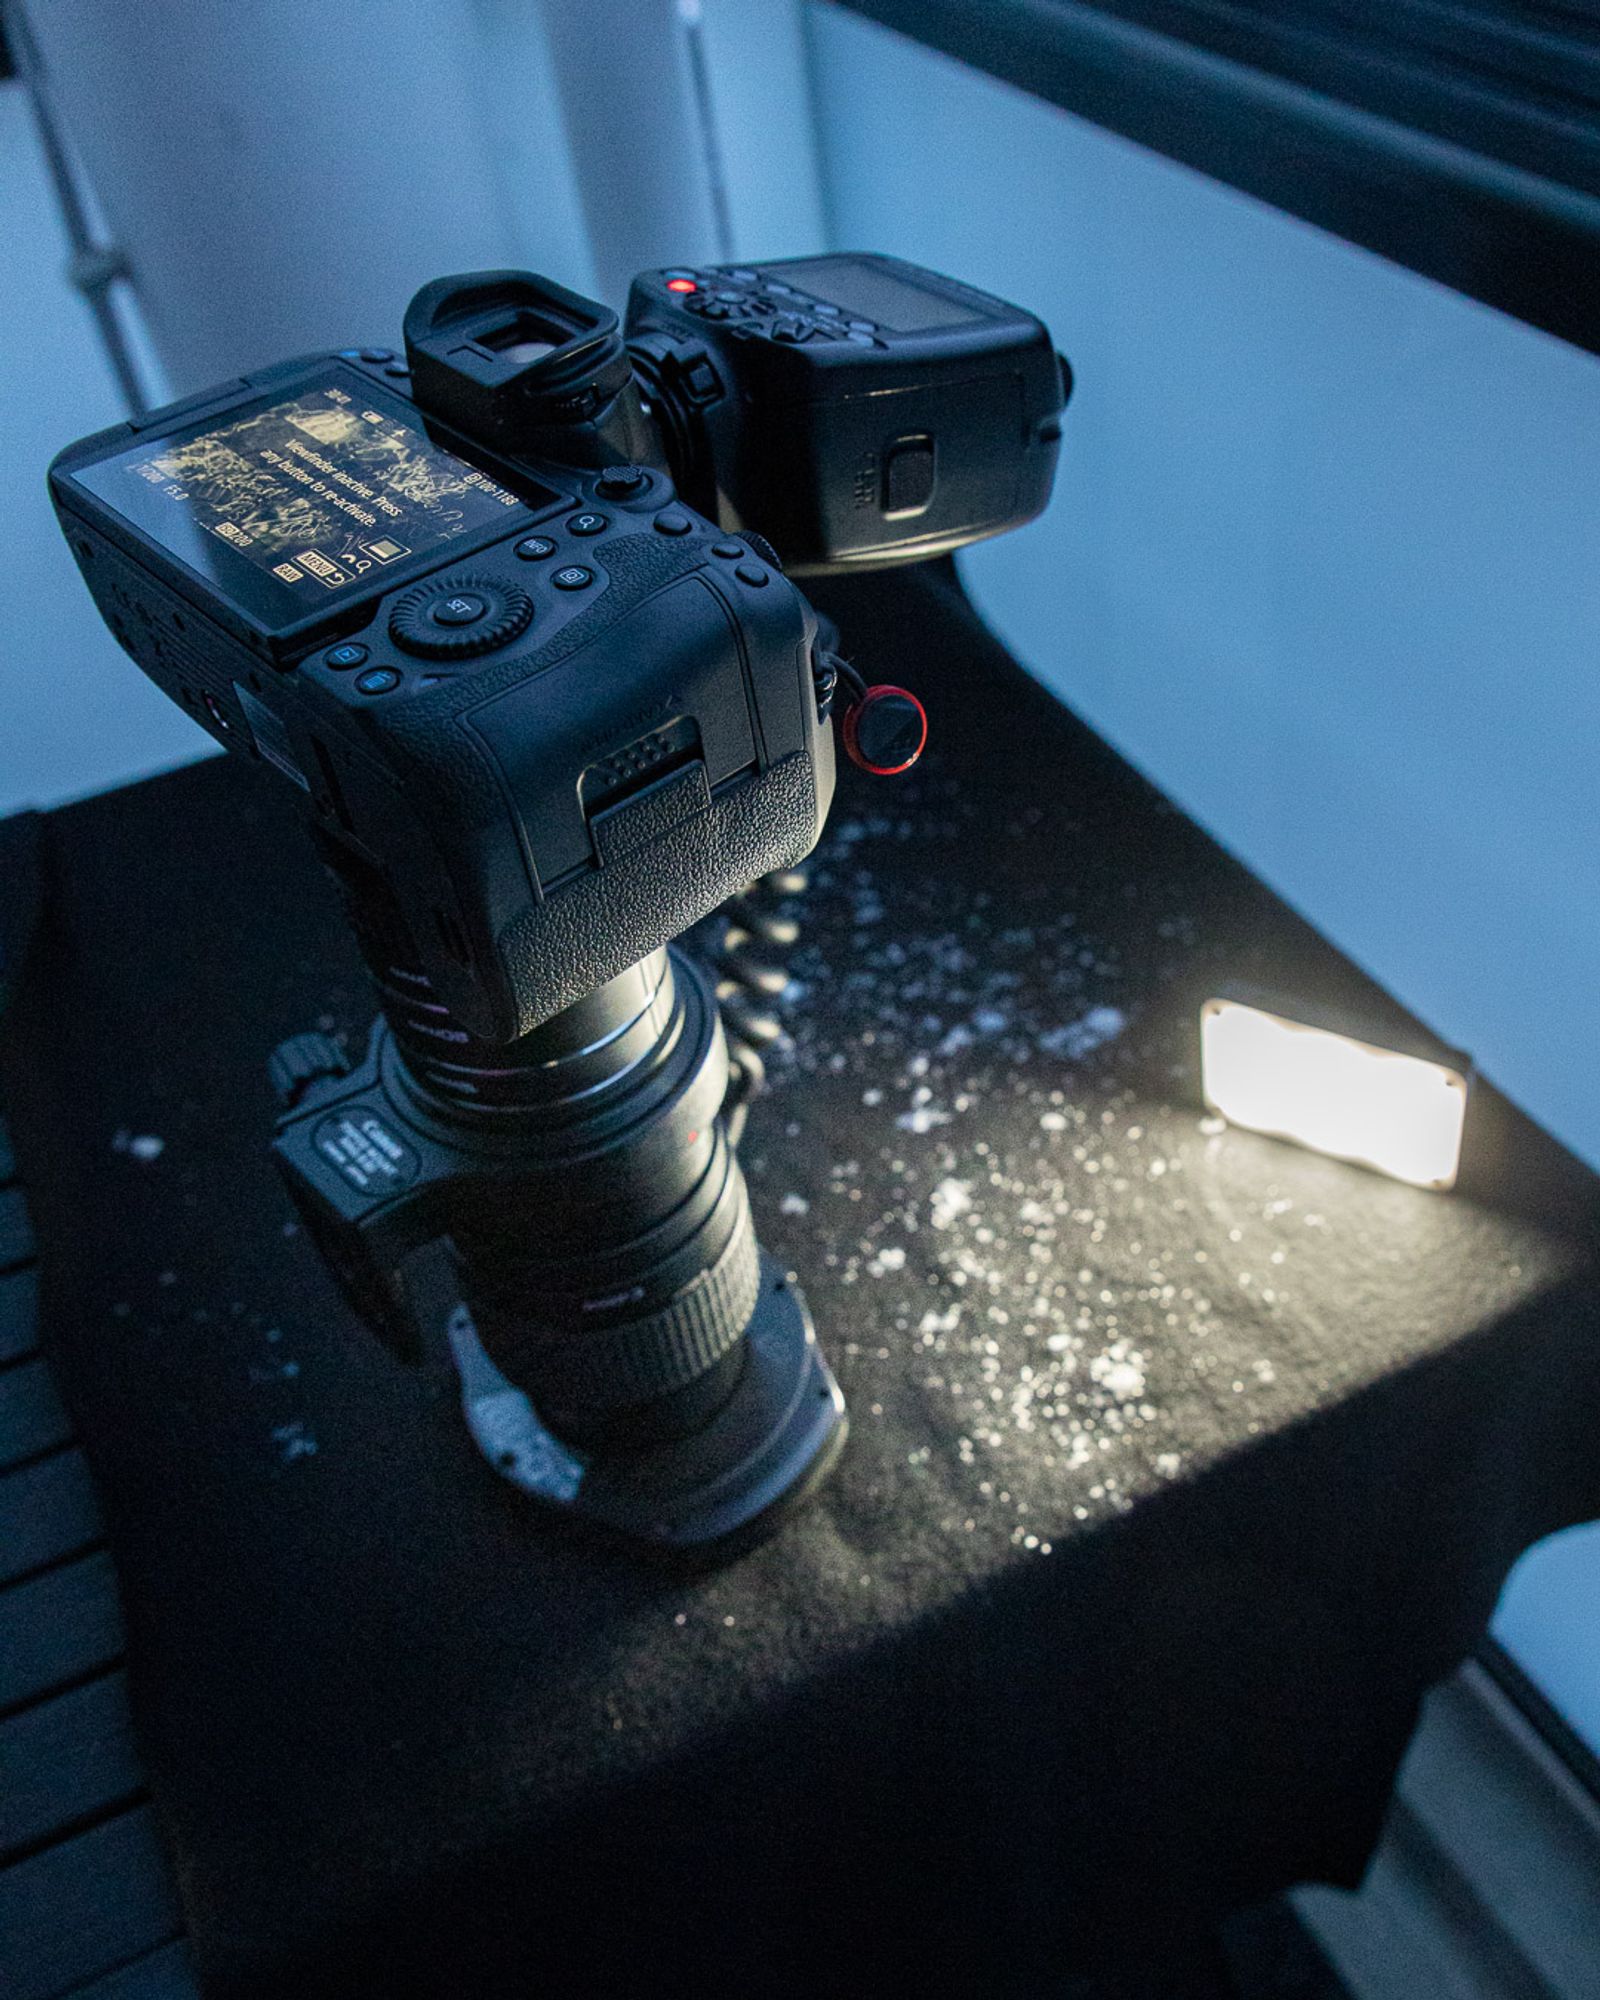 Kamera pitkällä makro-objektiivilla lumisen liinan päällä, sekä rengassalama